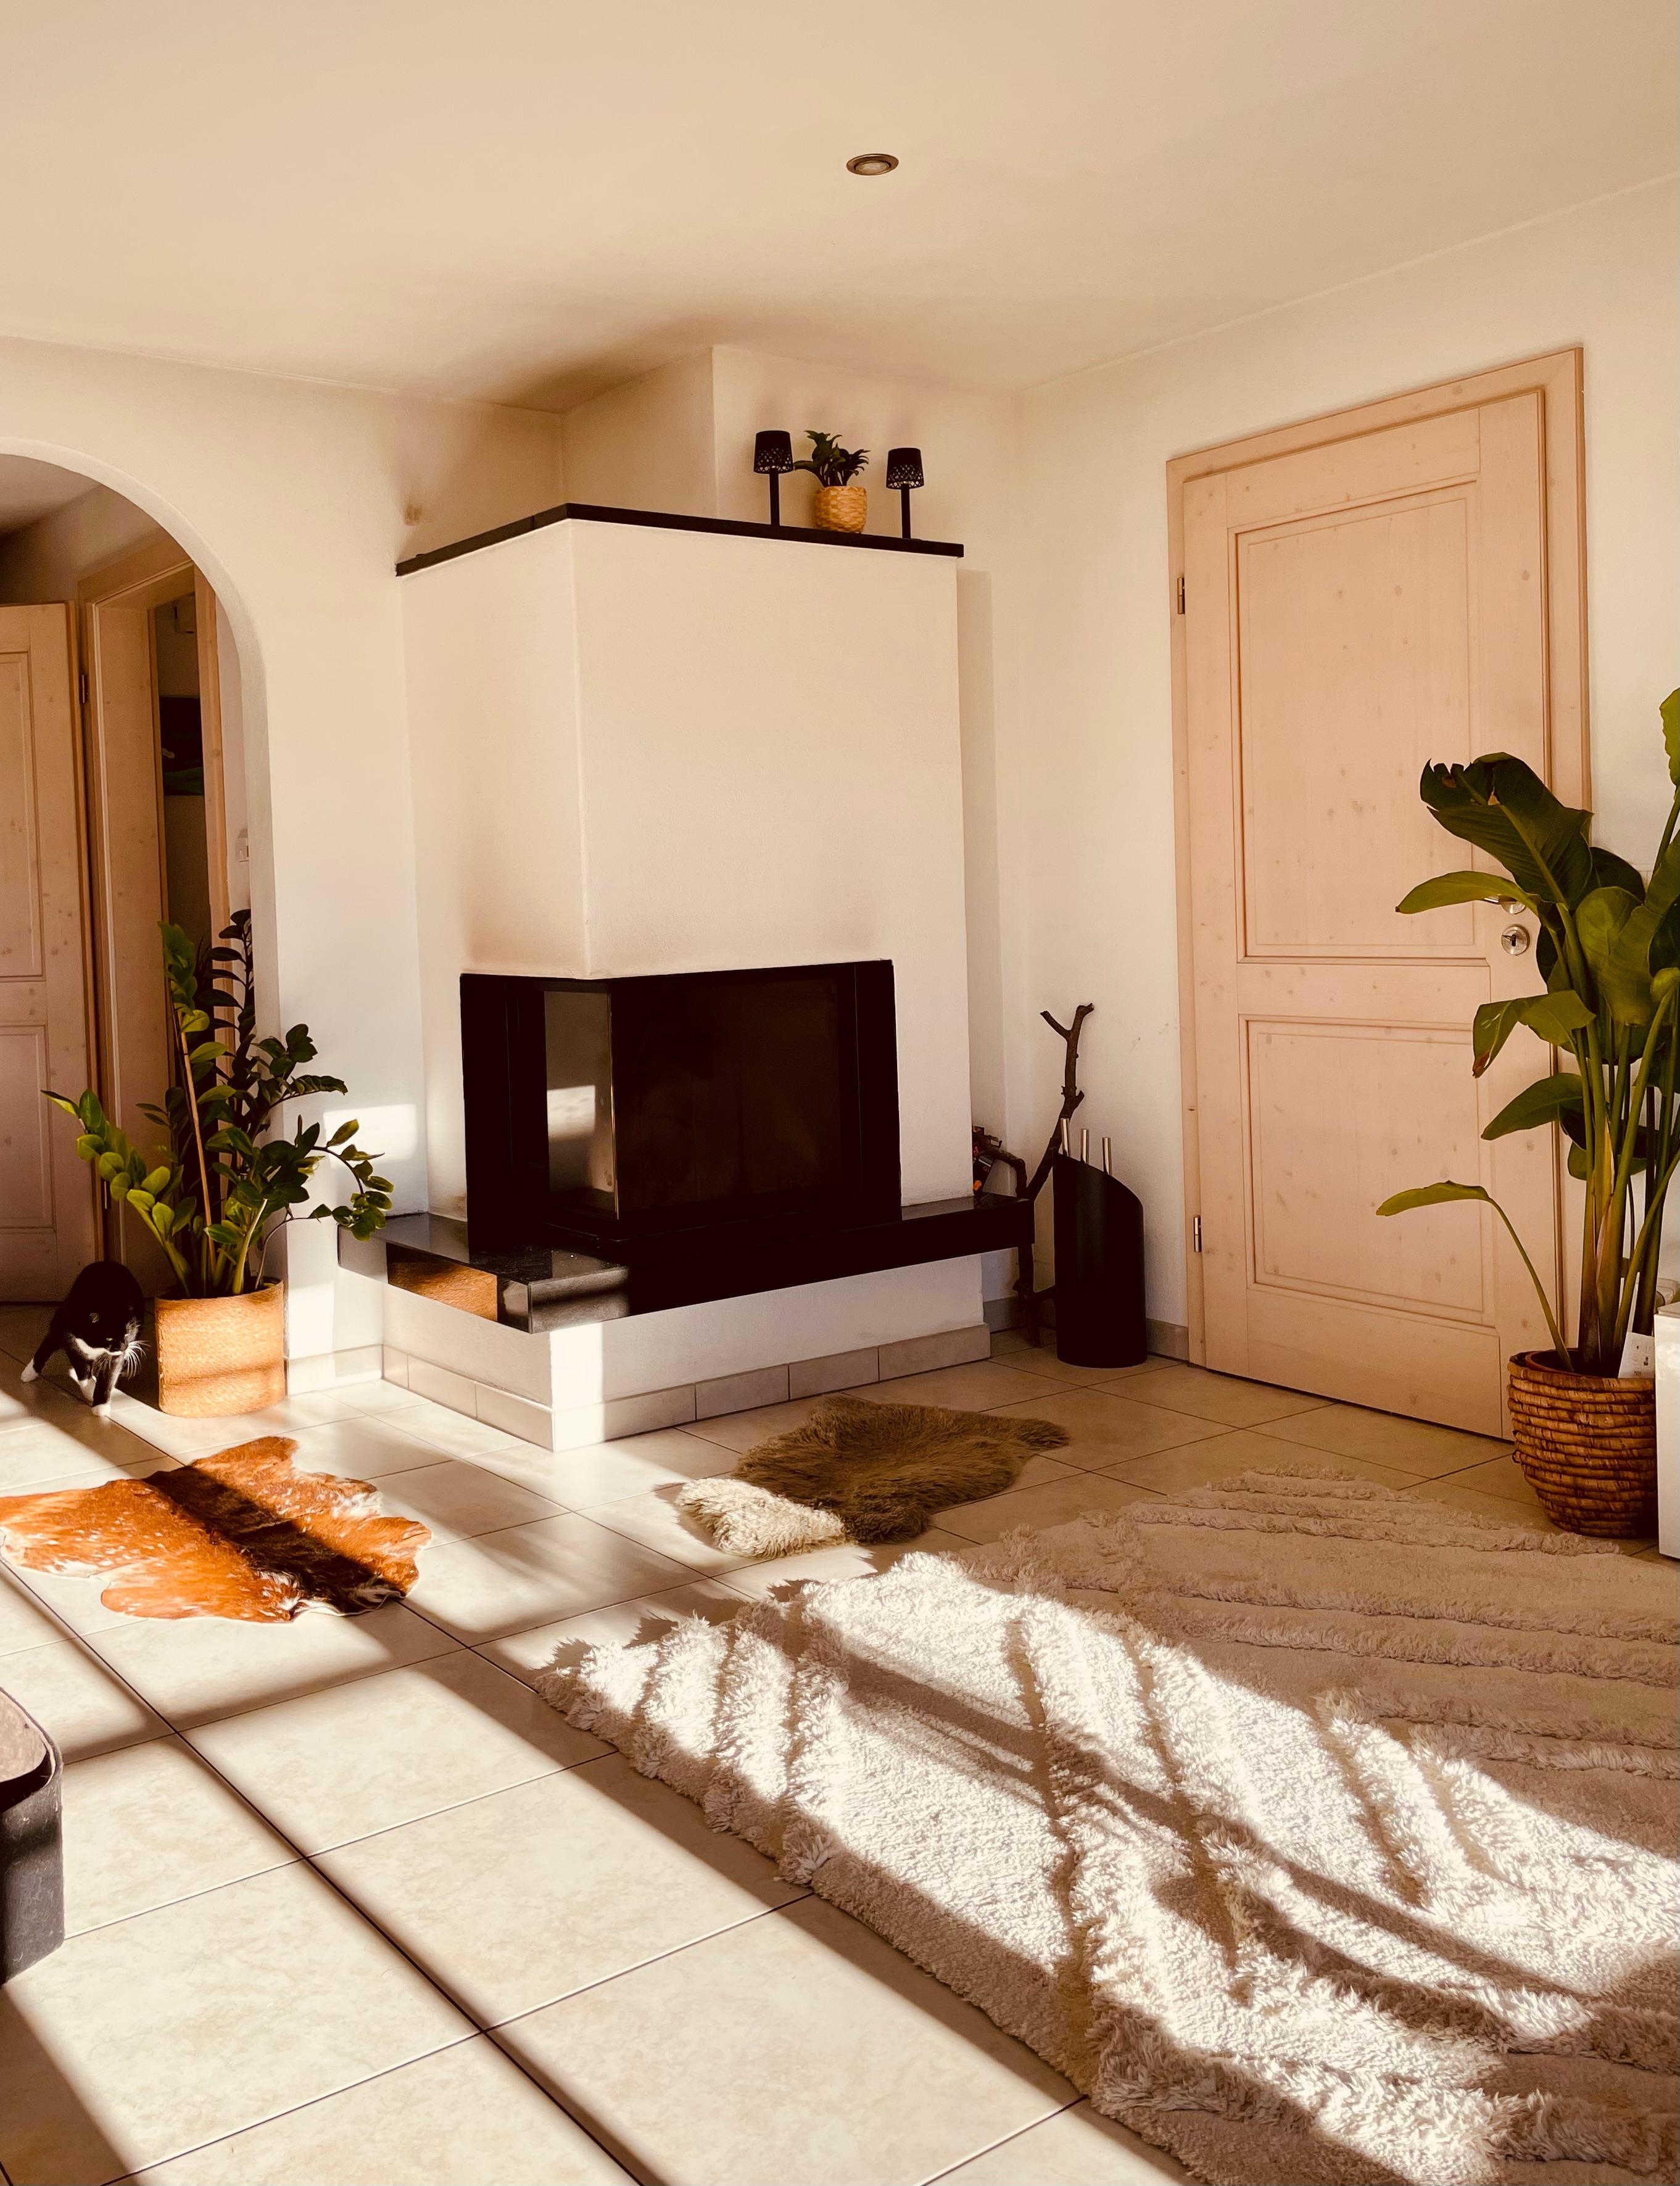 Wintersonne im Wohnzimmer ist das allerschönste Licht. In diesem Sinne, guten Morgen Sonnenschein. #livingroom #sonne #skandi #wohnzimmer 